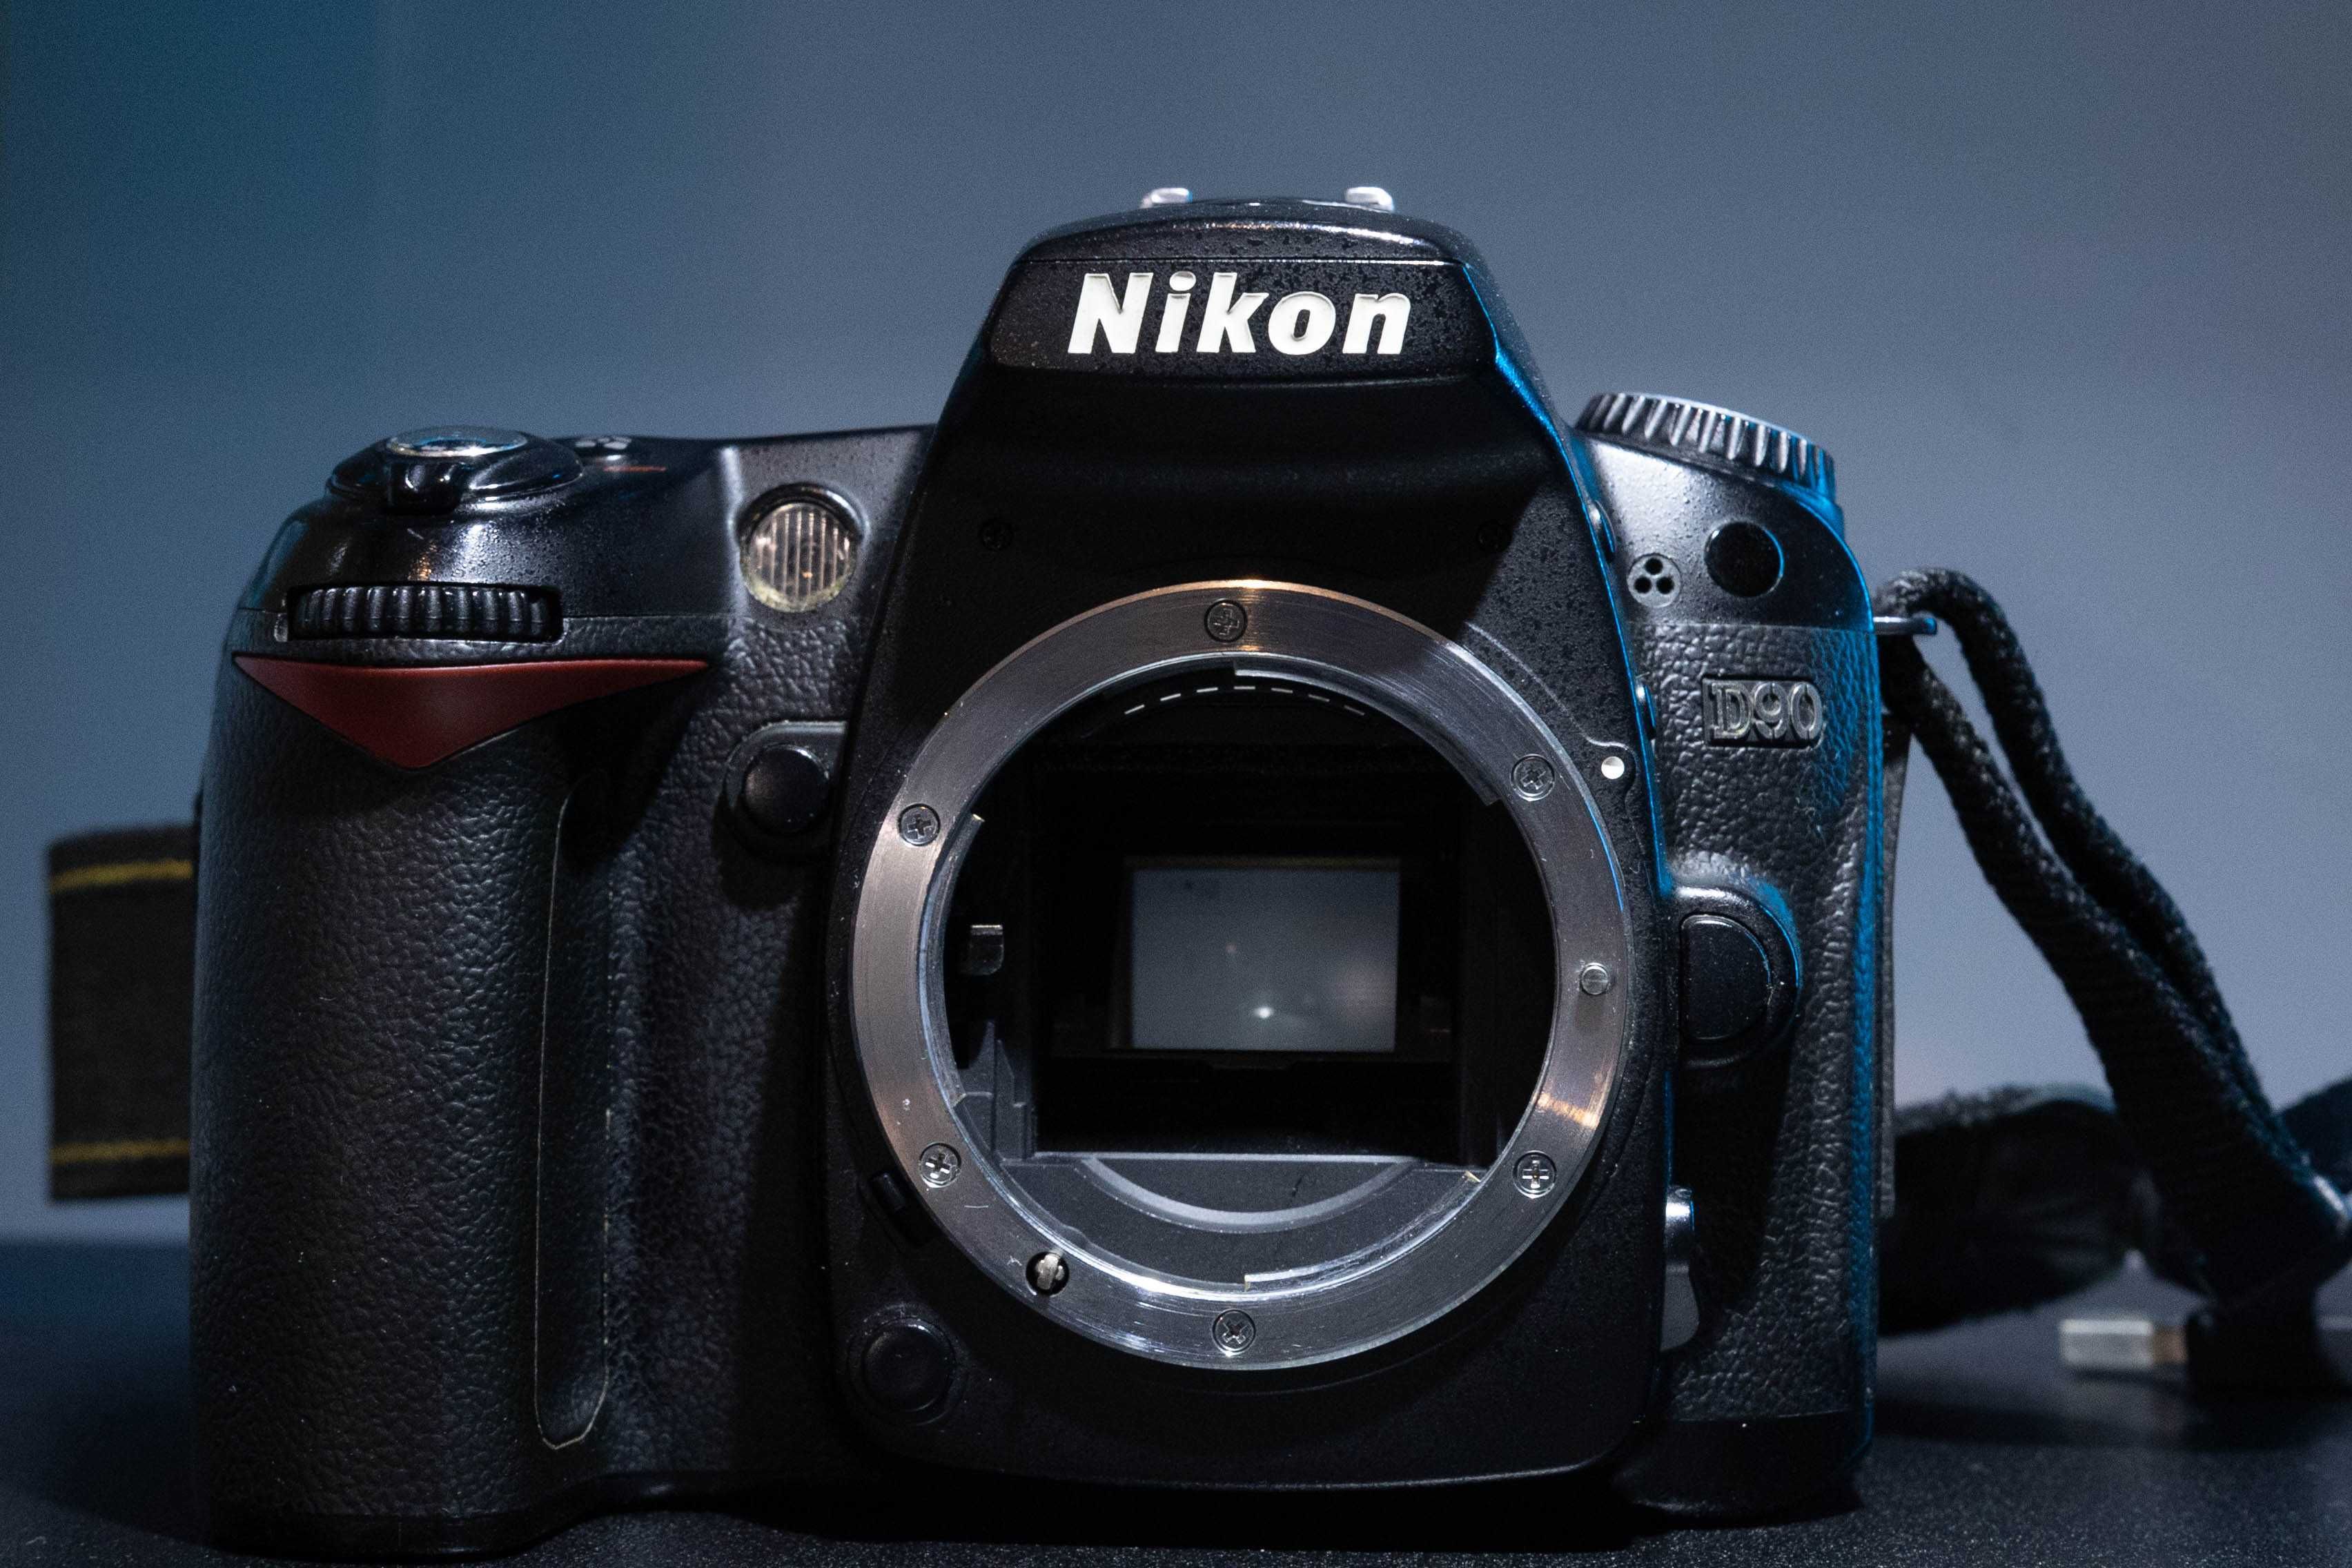 NIKON D90 + Nikon 18-105